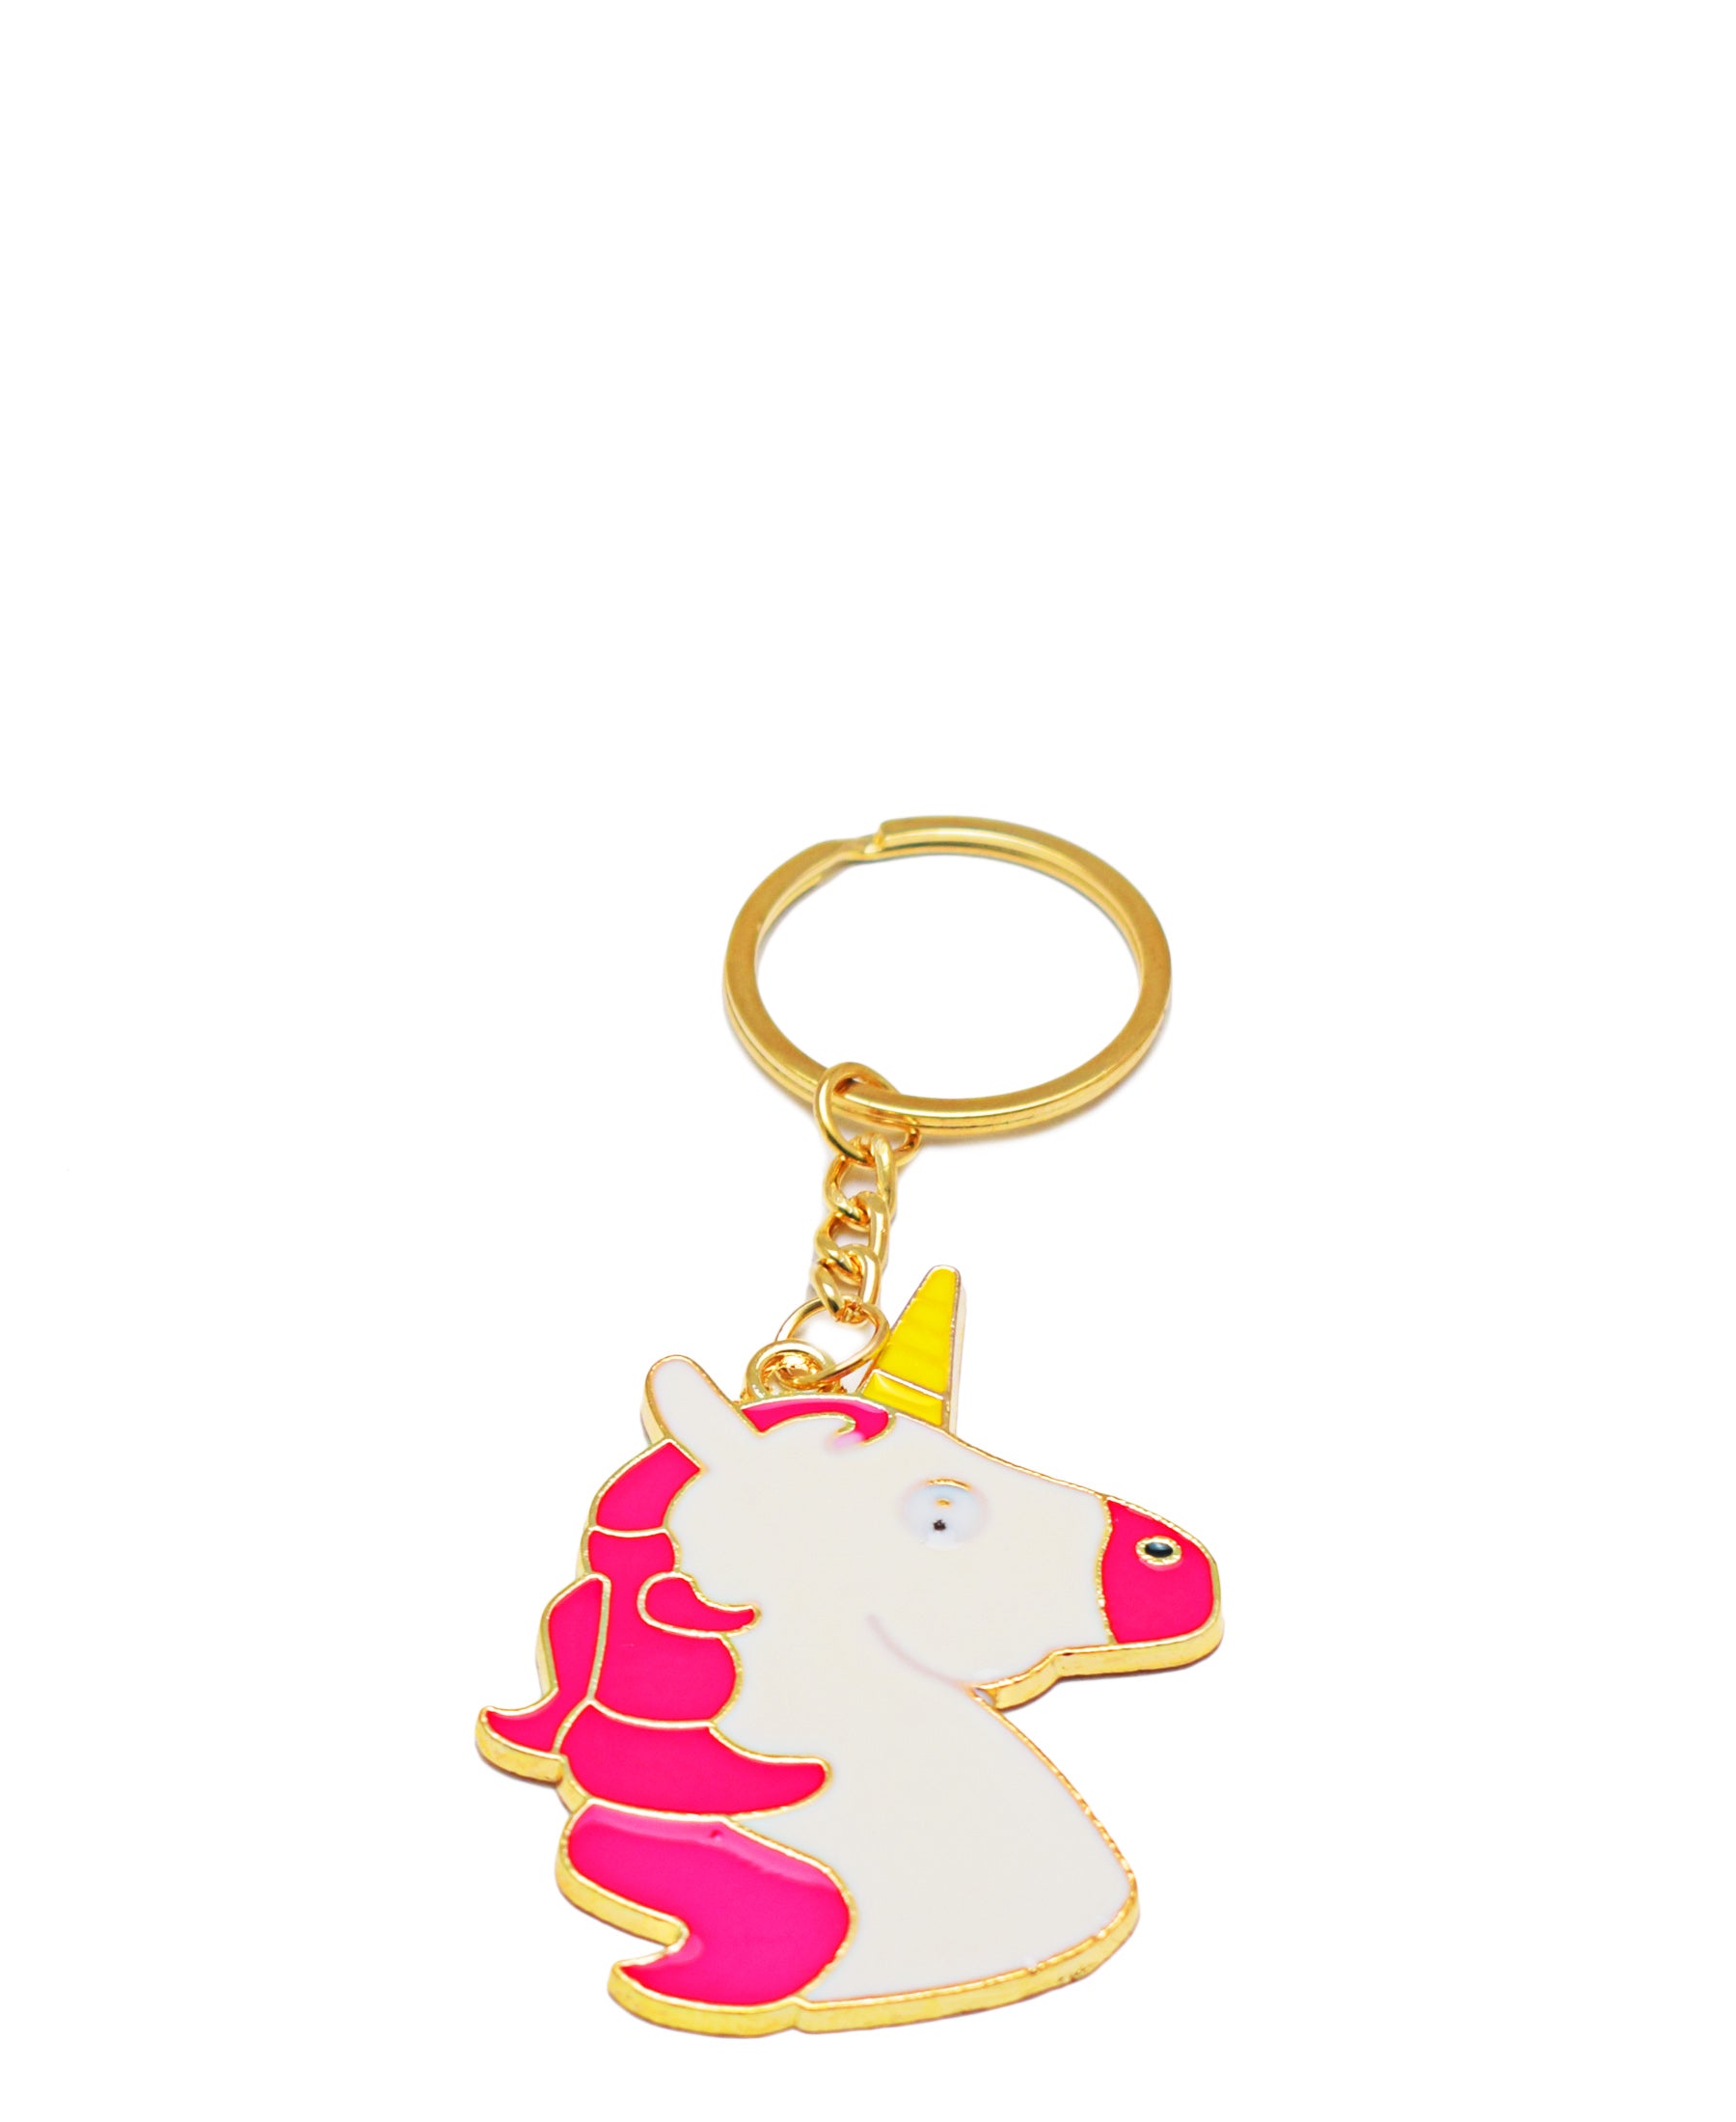 Fashion Jewellry Key Chain Unicorn - Pink & White